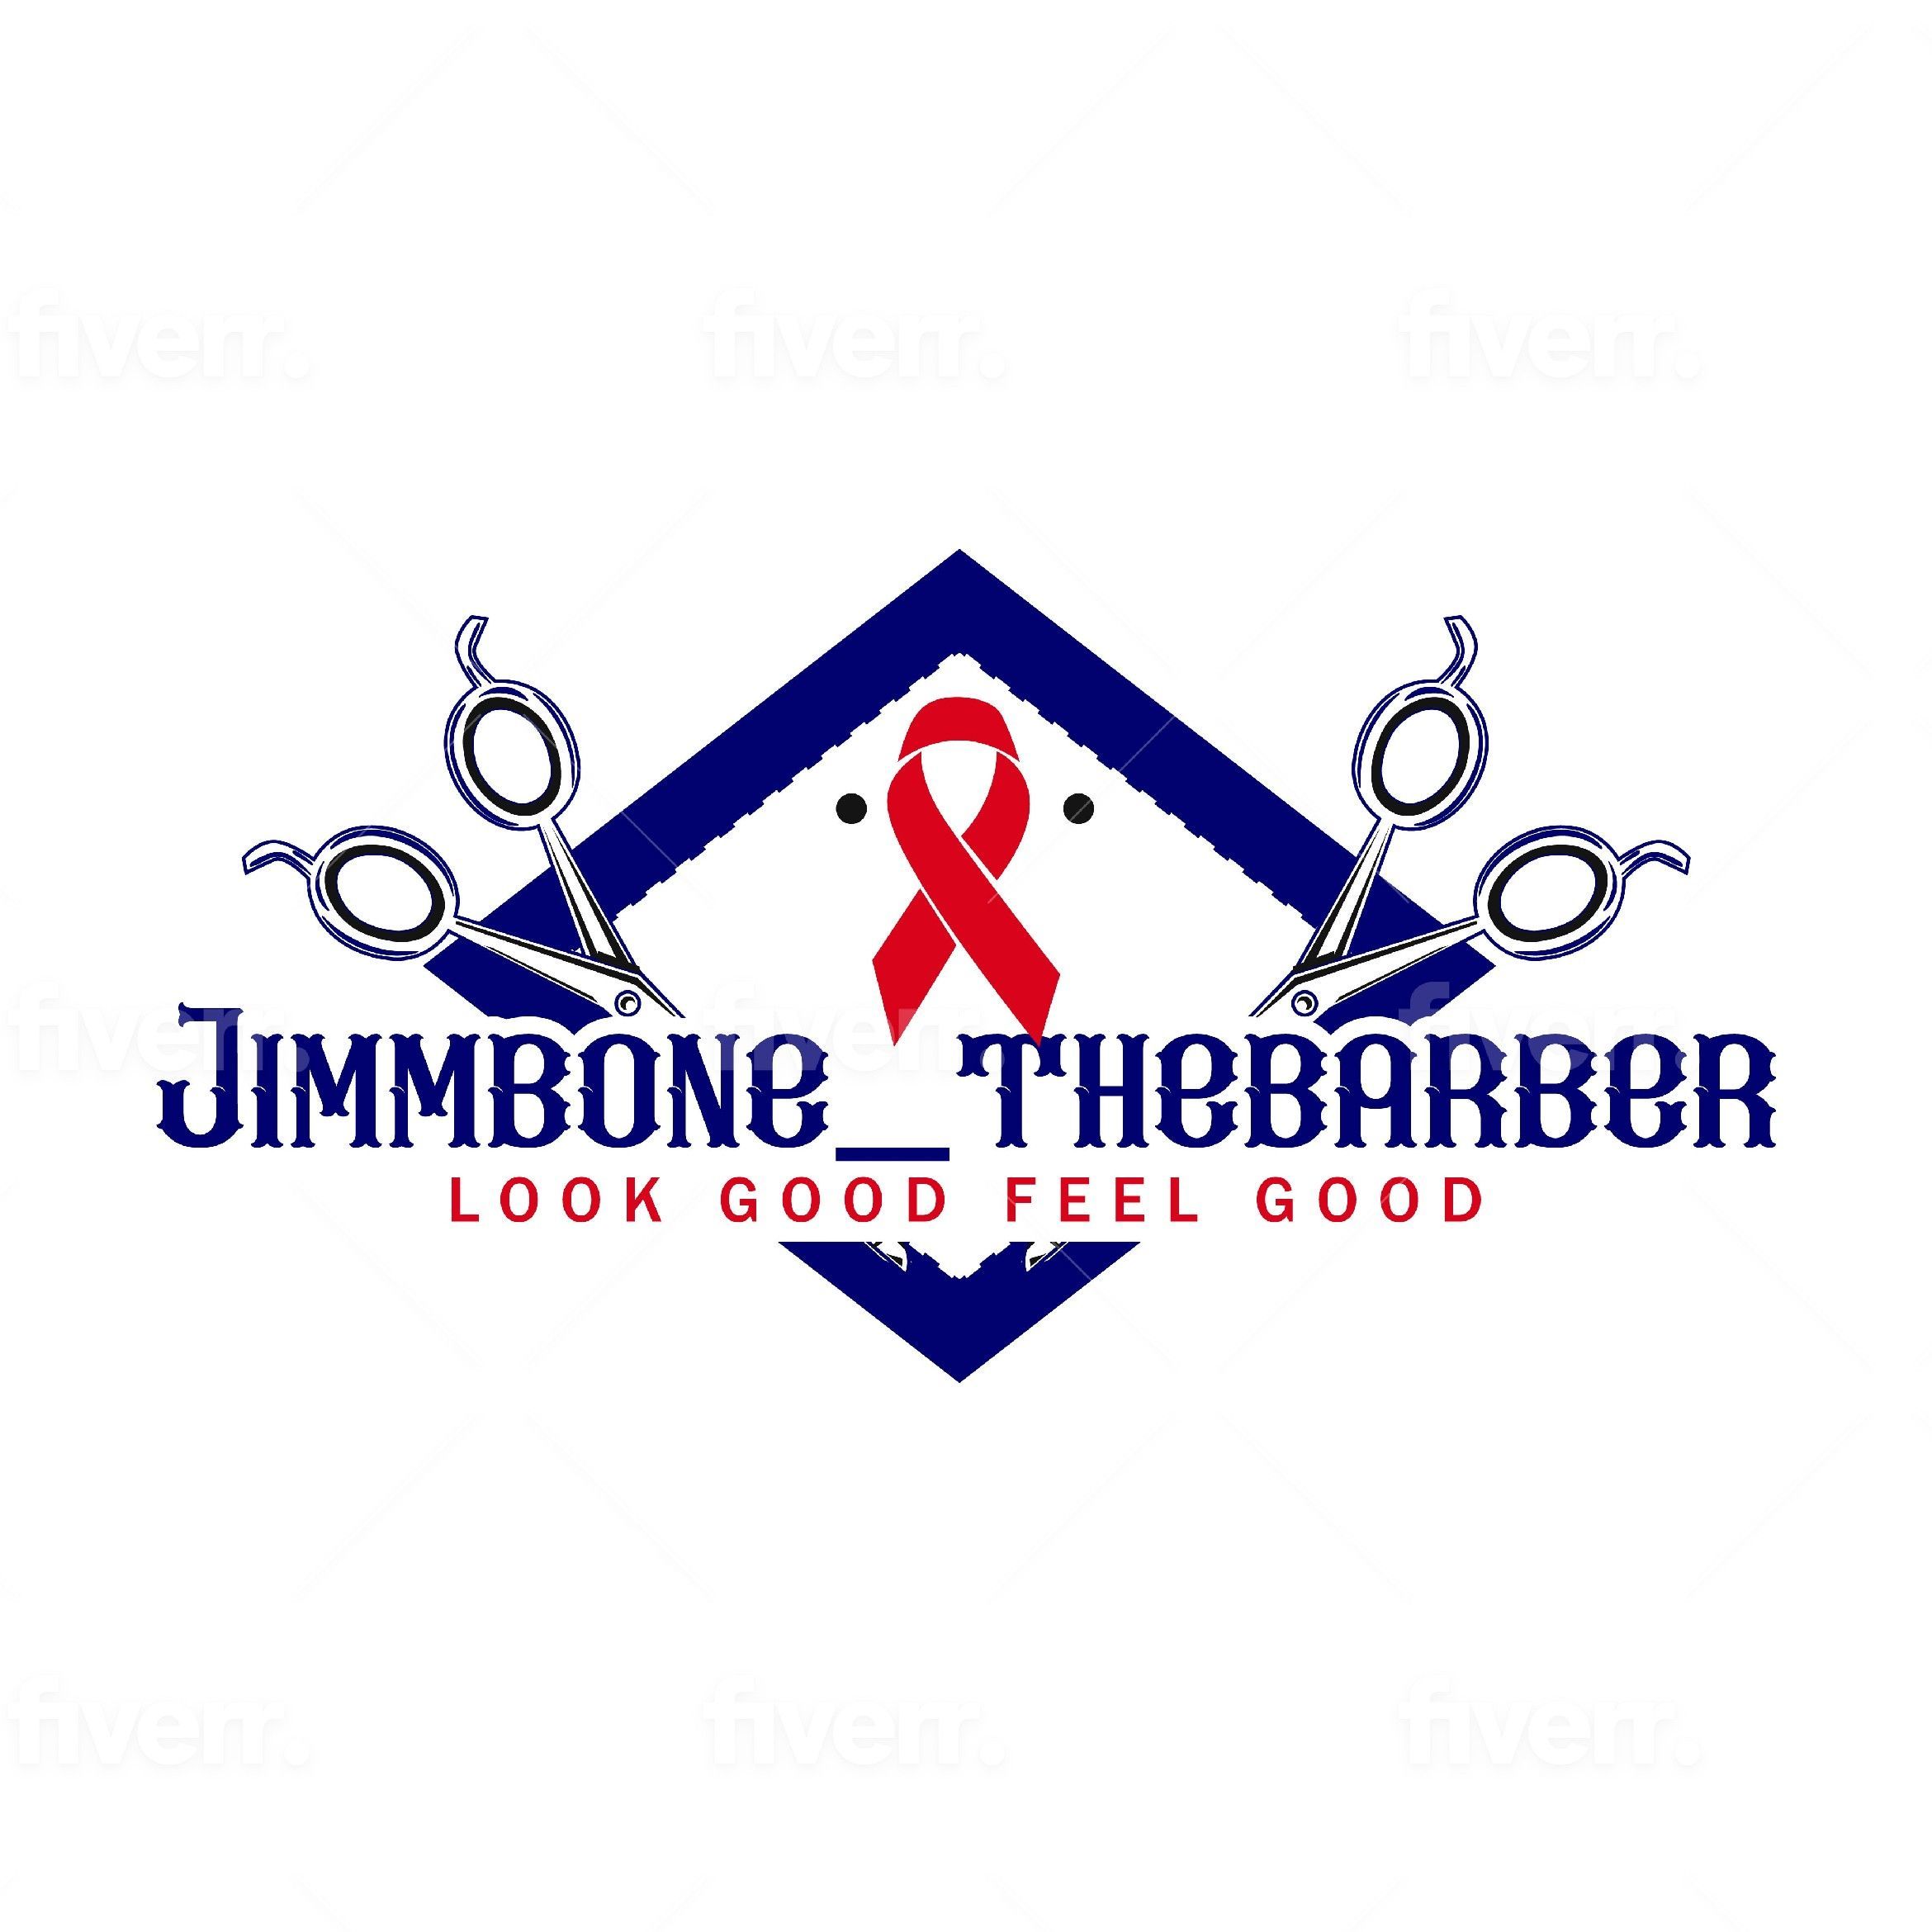 Jimmbone_thebarber, 238 N LOOP 1604 W #204, San Antonio, 78232